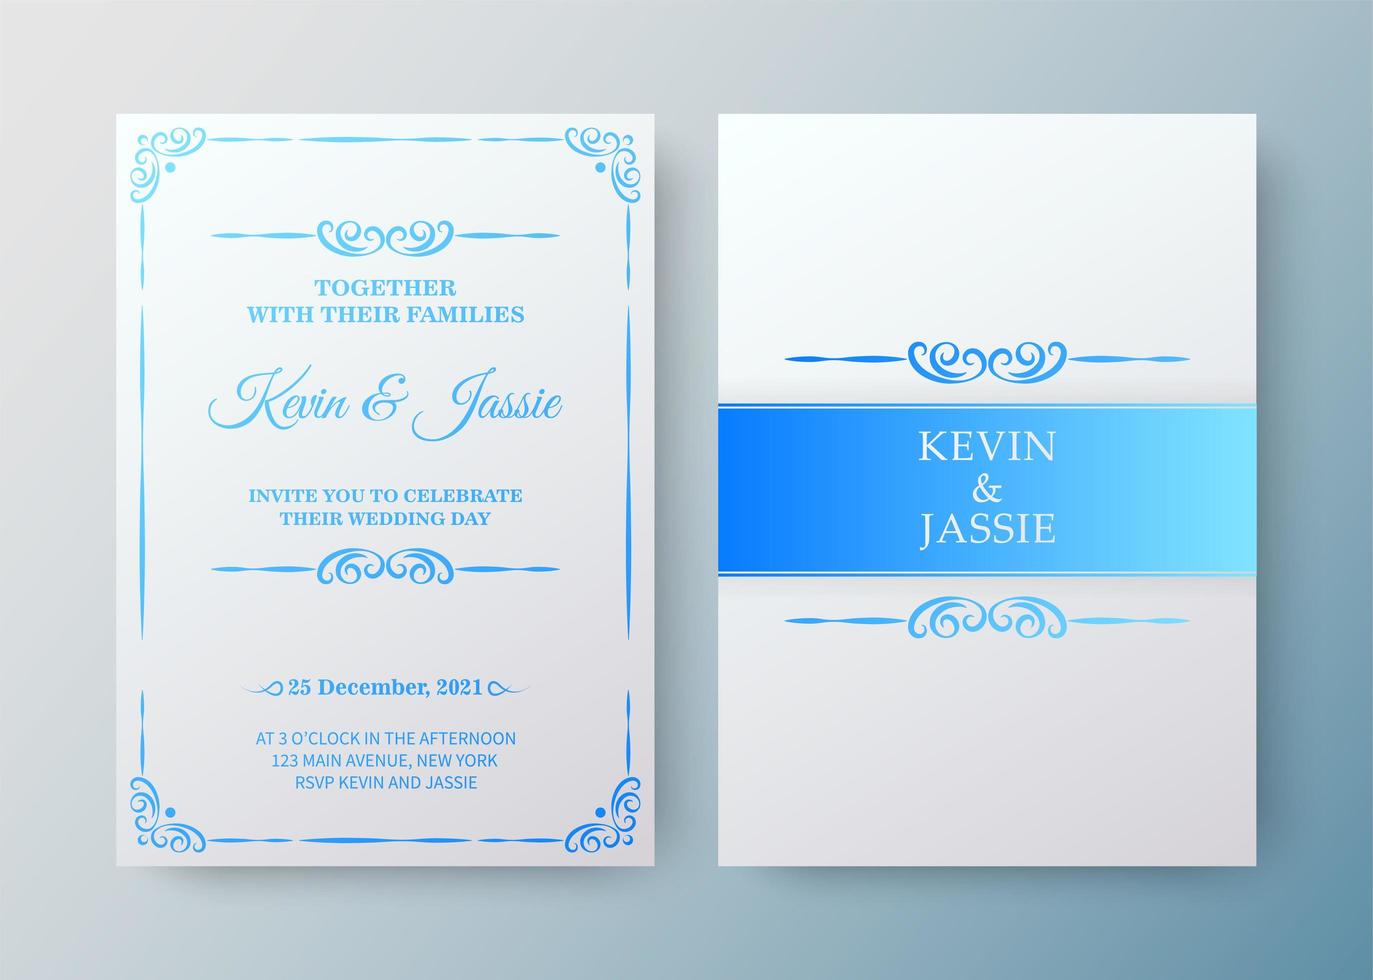 modello di carta di invito vintage bianco e blu di lusso vettore